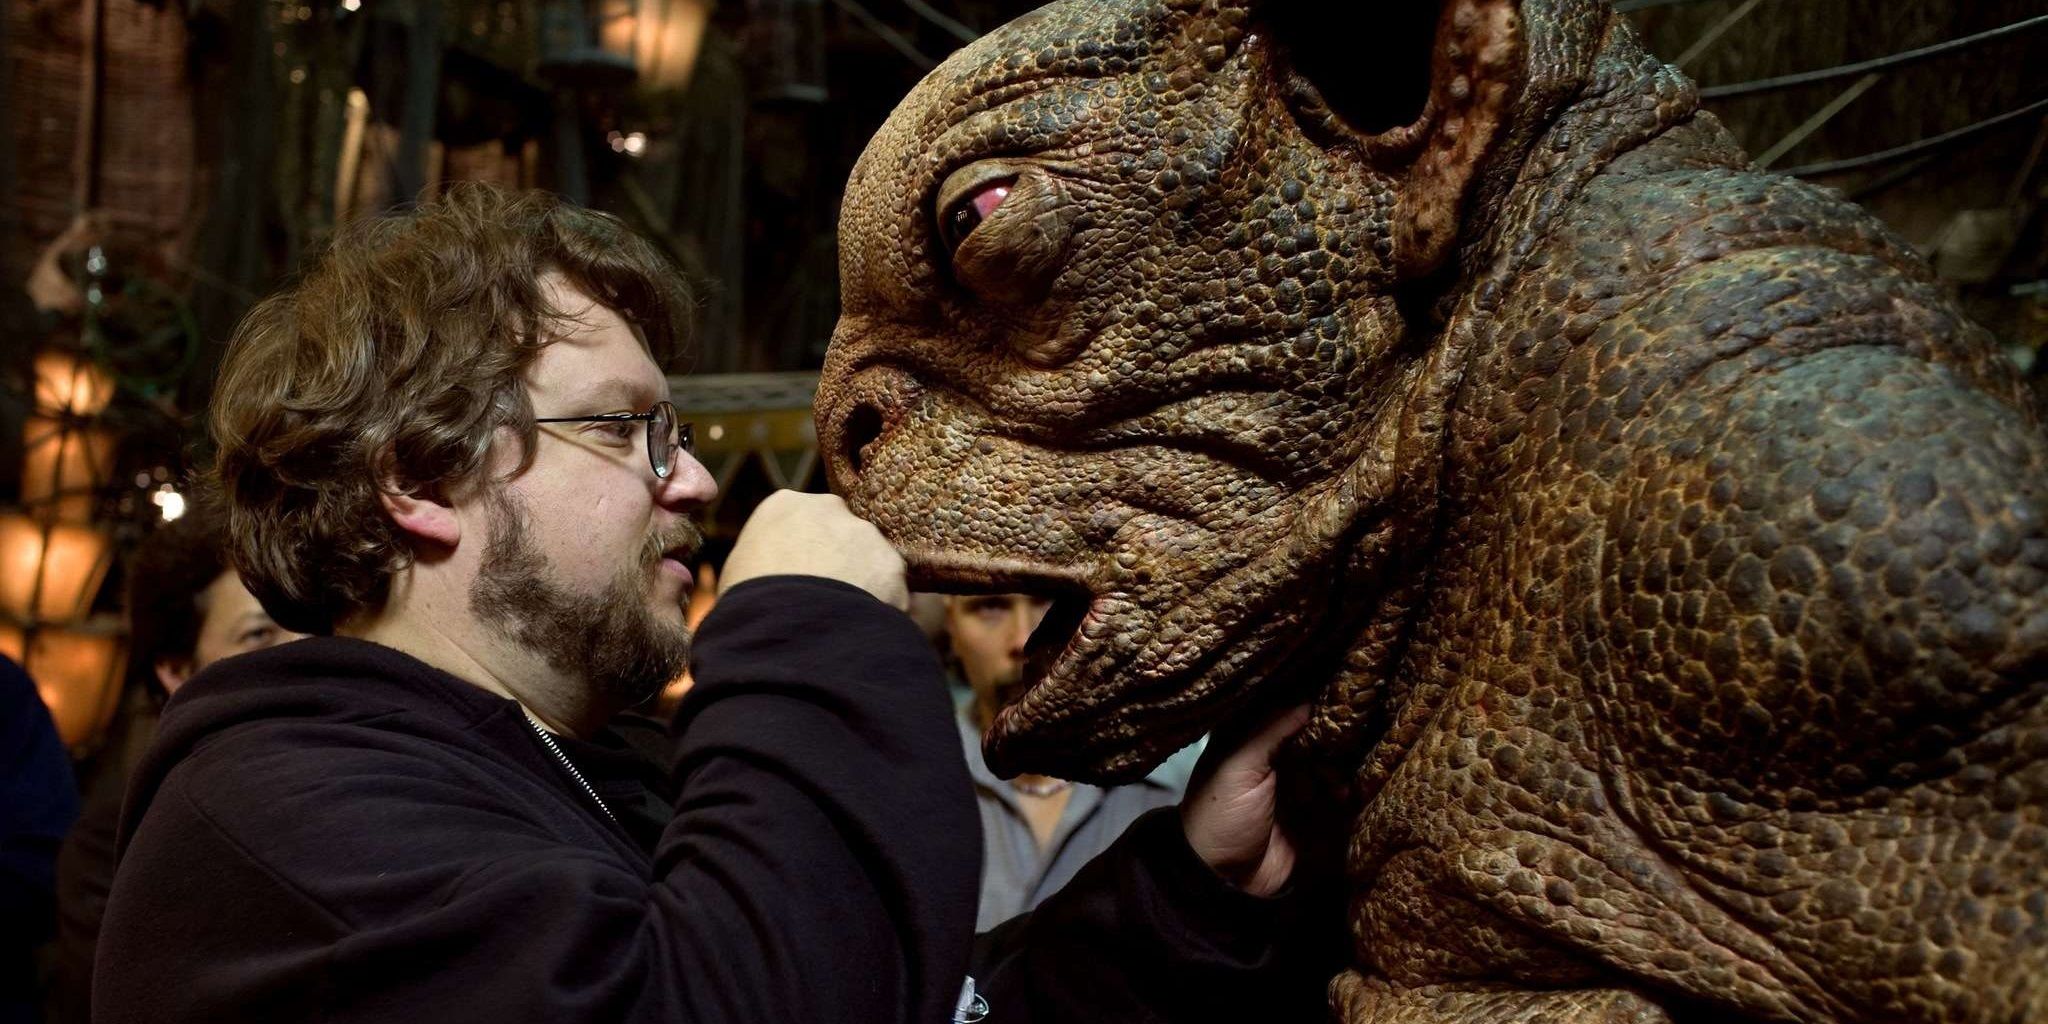 Guillermo del Toro directing